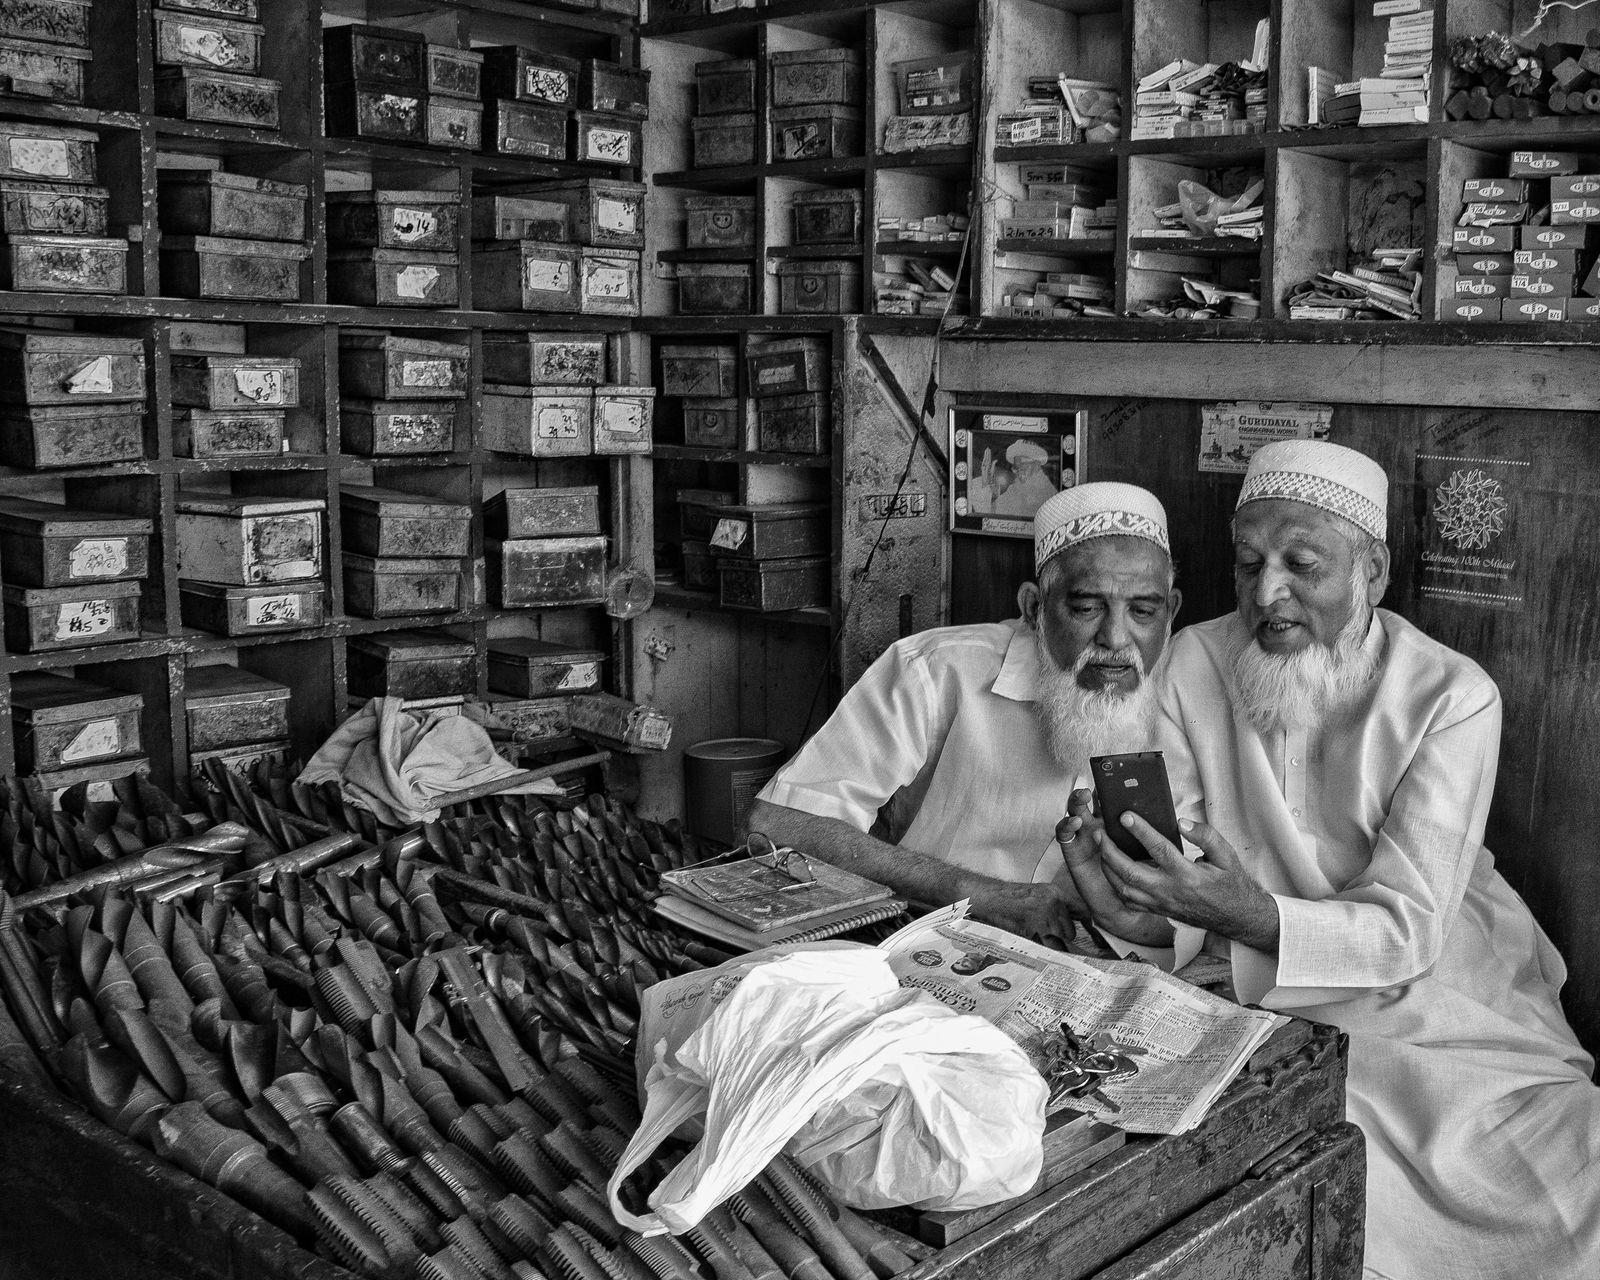 © Kip Harris - Drill Bit Merchants, Mumbai